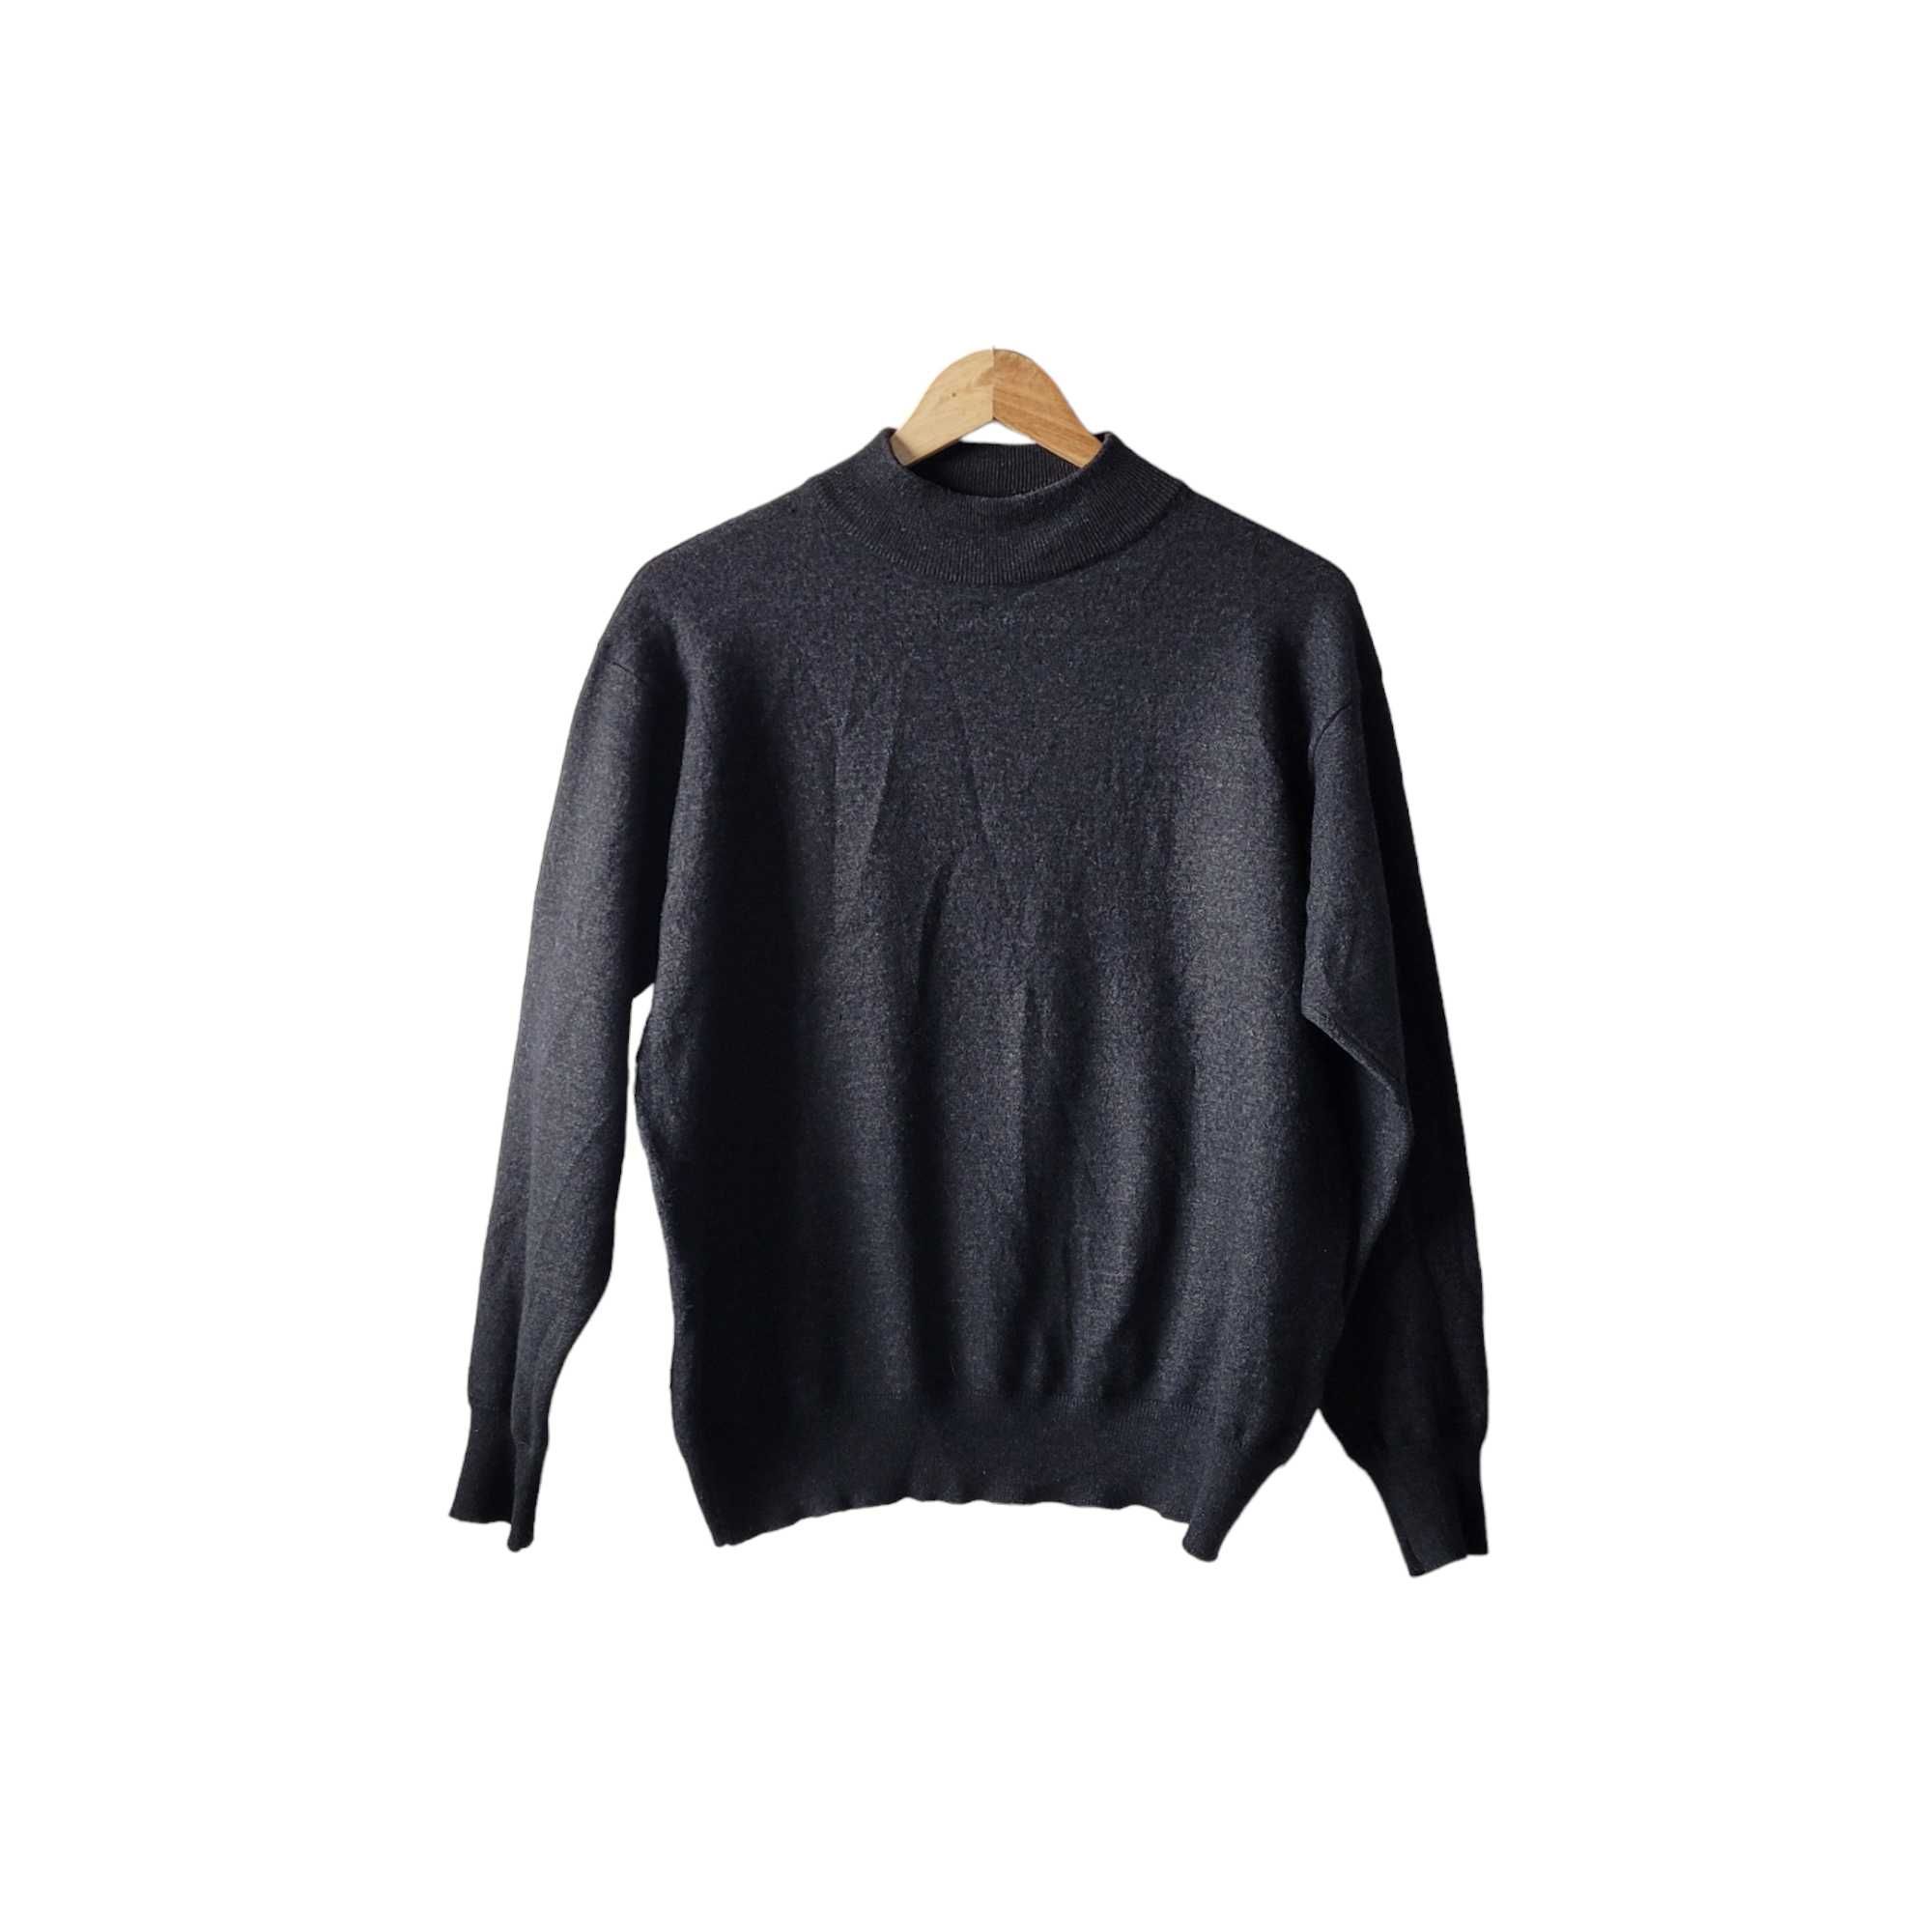 Grafitowy melanżowy sweter L Nouveau 50% wełna merynosa merino półgolf